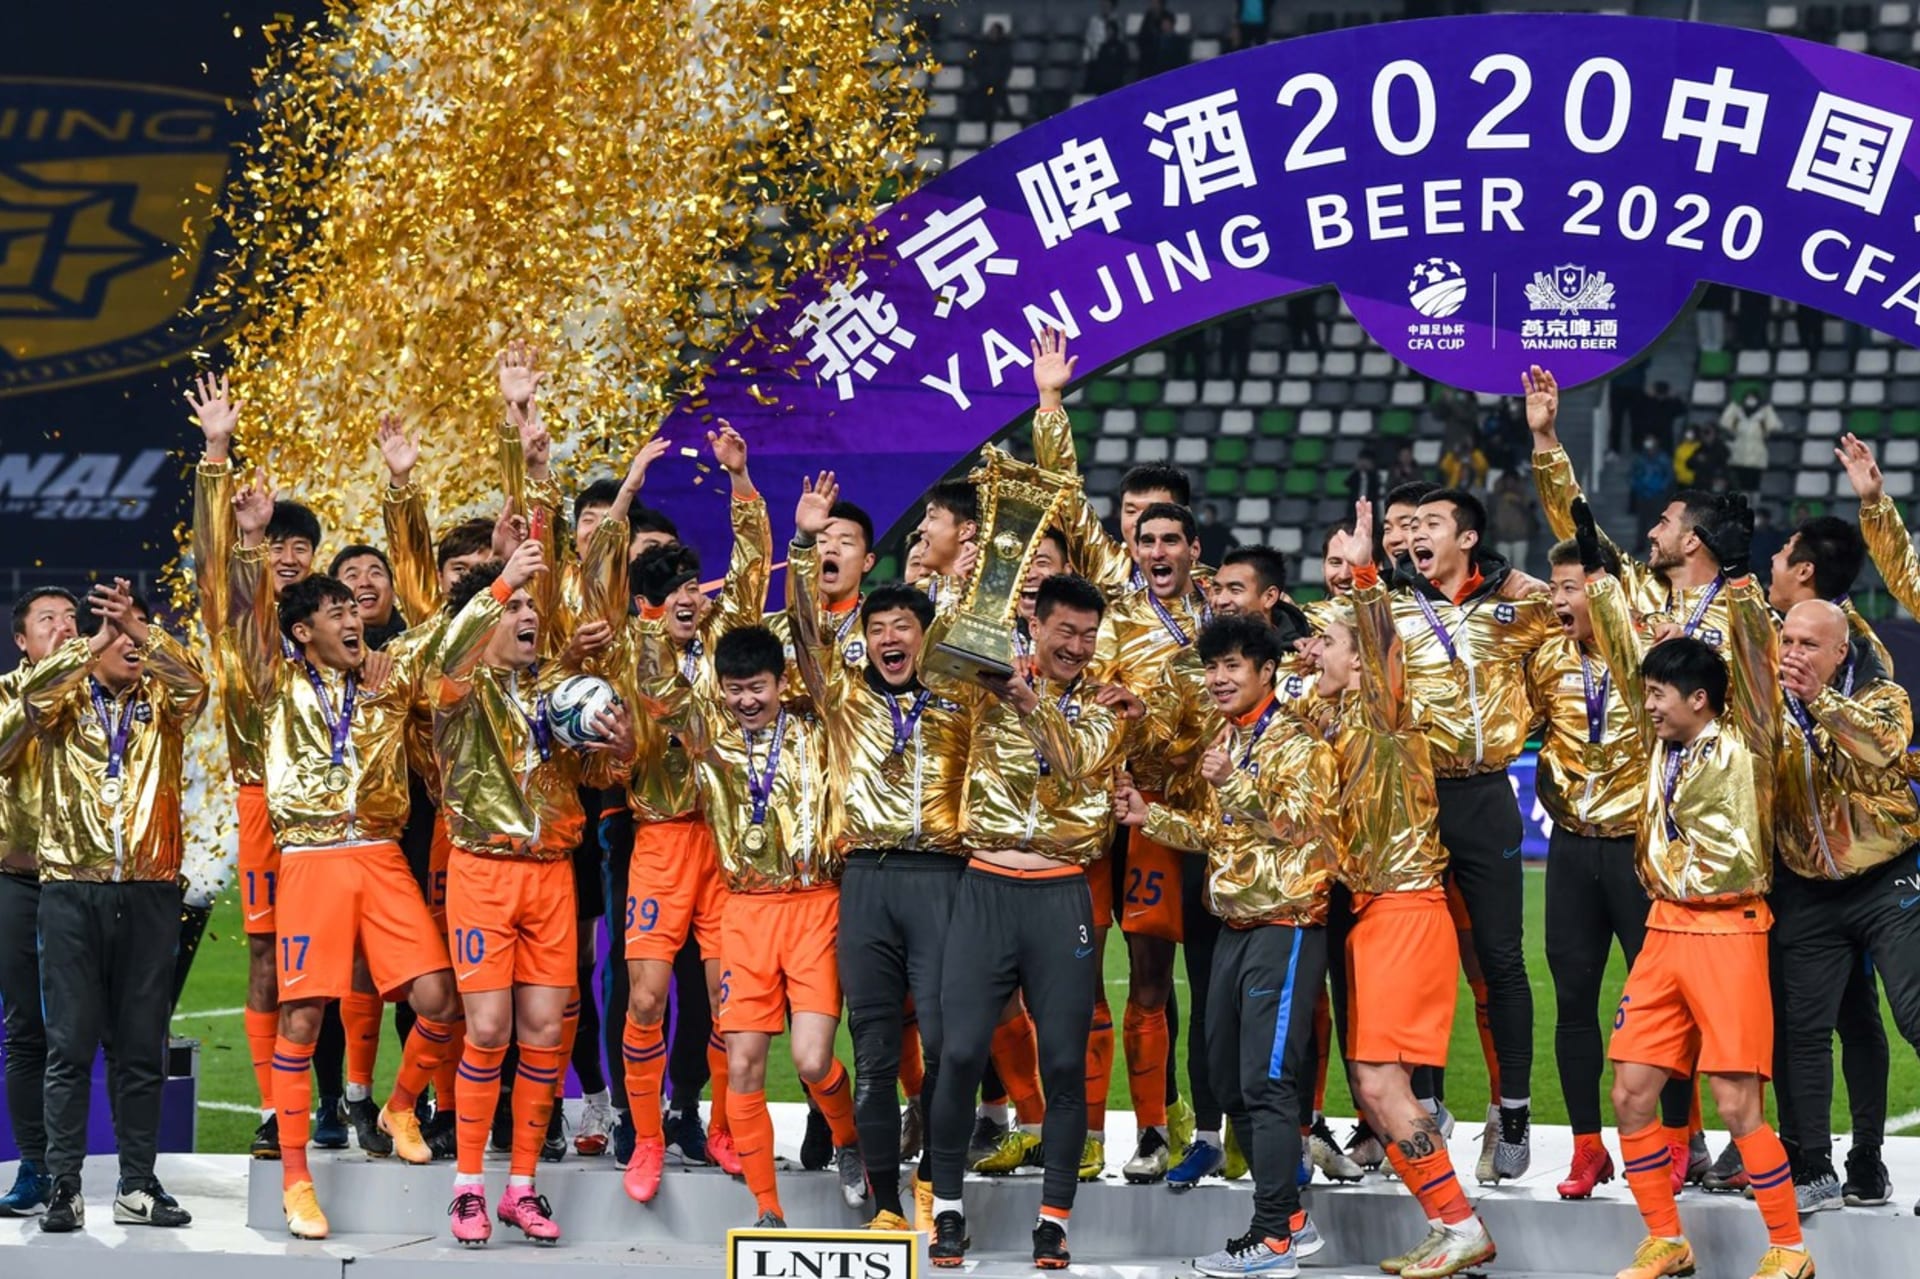 Fotbalisté klubu Shandong Luneng se radují z vítězství v Čínském poháru na konci roku 2020.